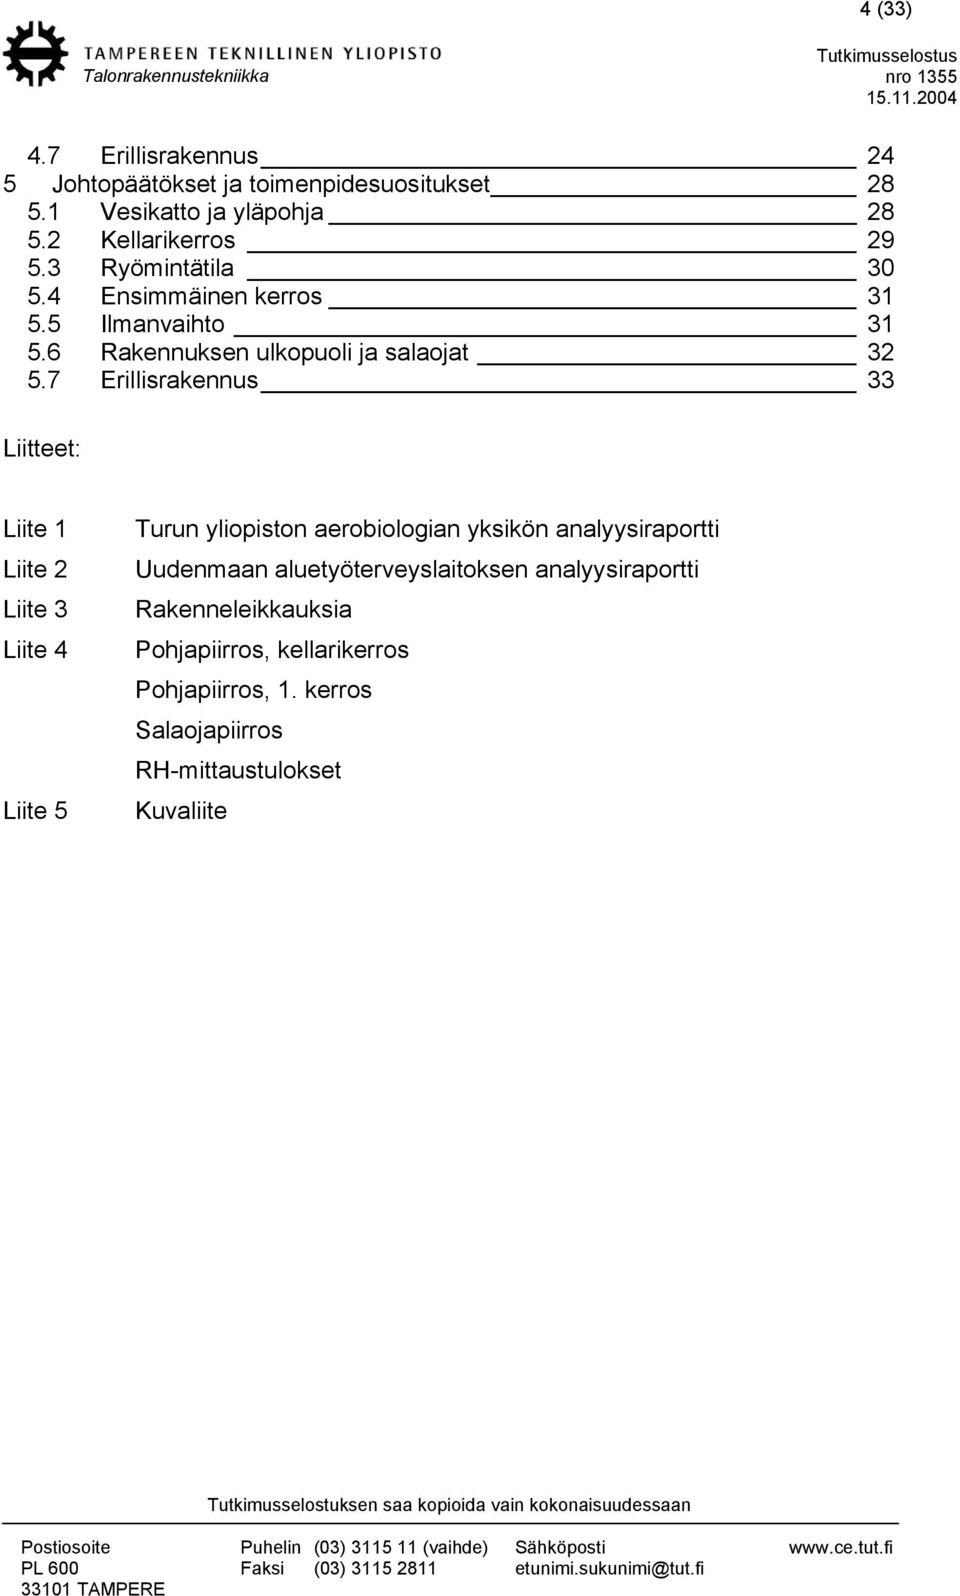 7 Erillisrakennus 33 Liitteet: Liite 1 Liite 2 Liite 3 Liite 4 Liite 5 Turun yliopiston aerobiologian yksikön analyysiraportti